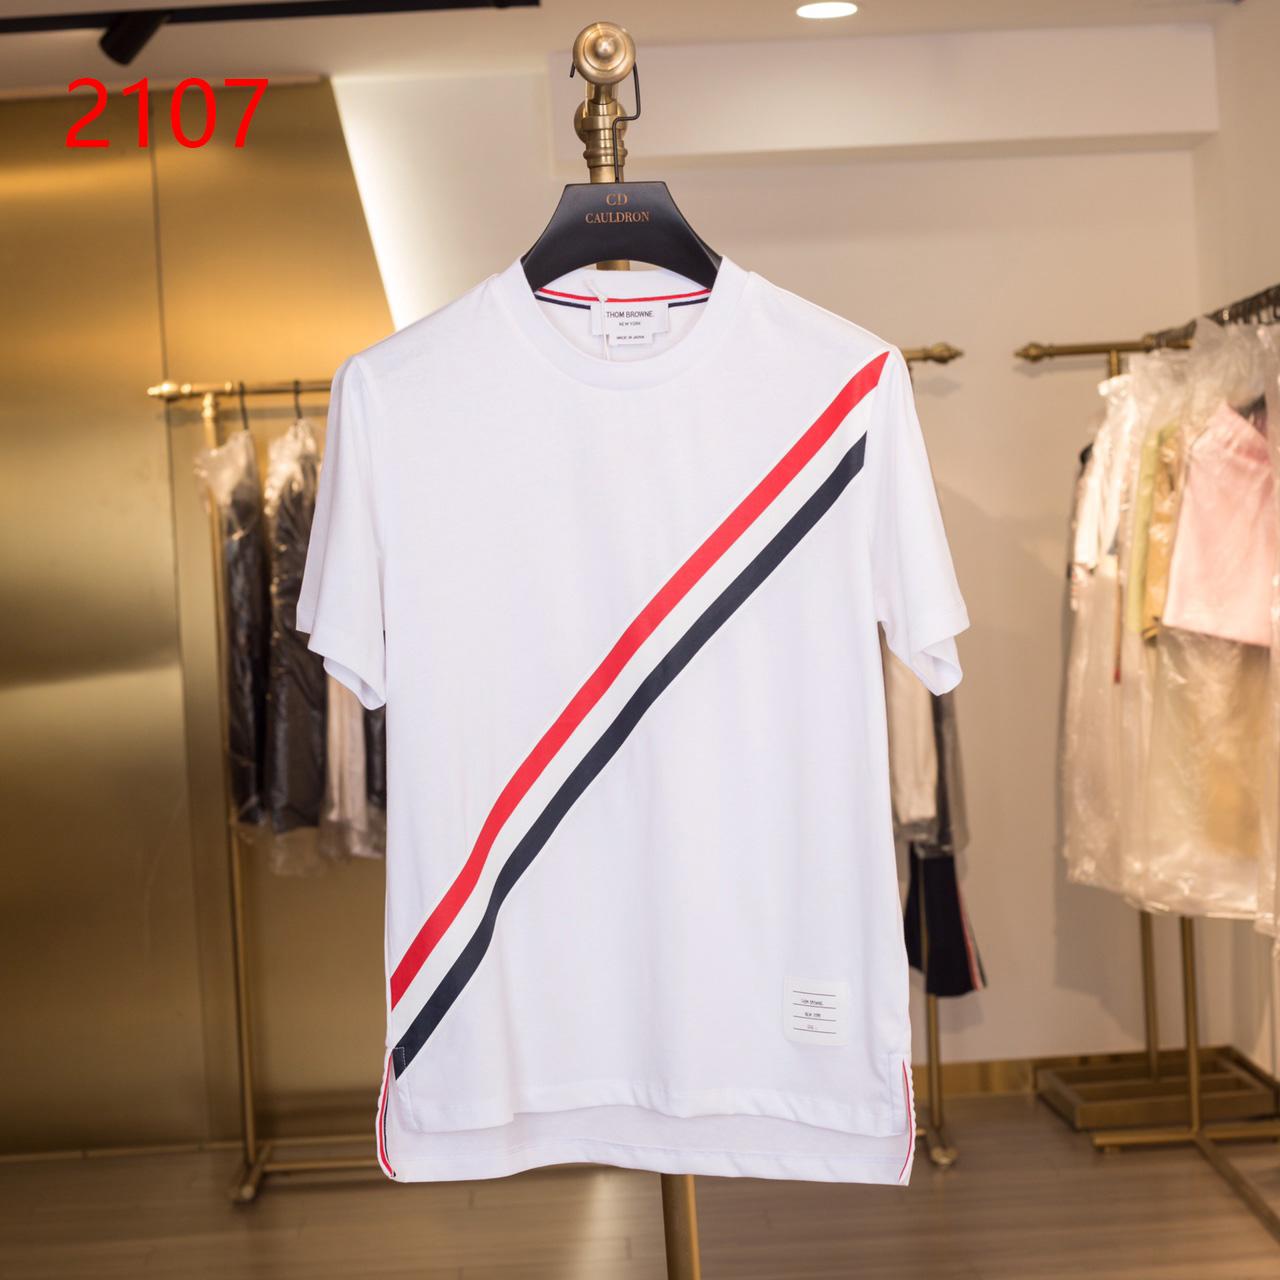 Thom Browne RWB Stripe T-Shirt   2107 - DesignerGu